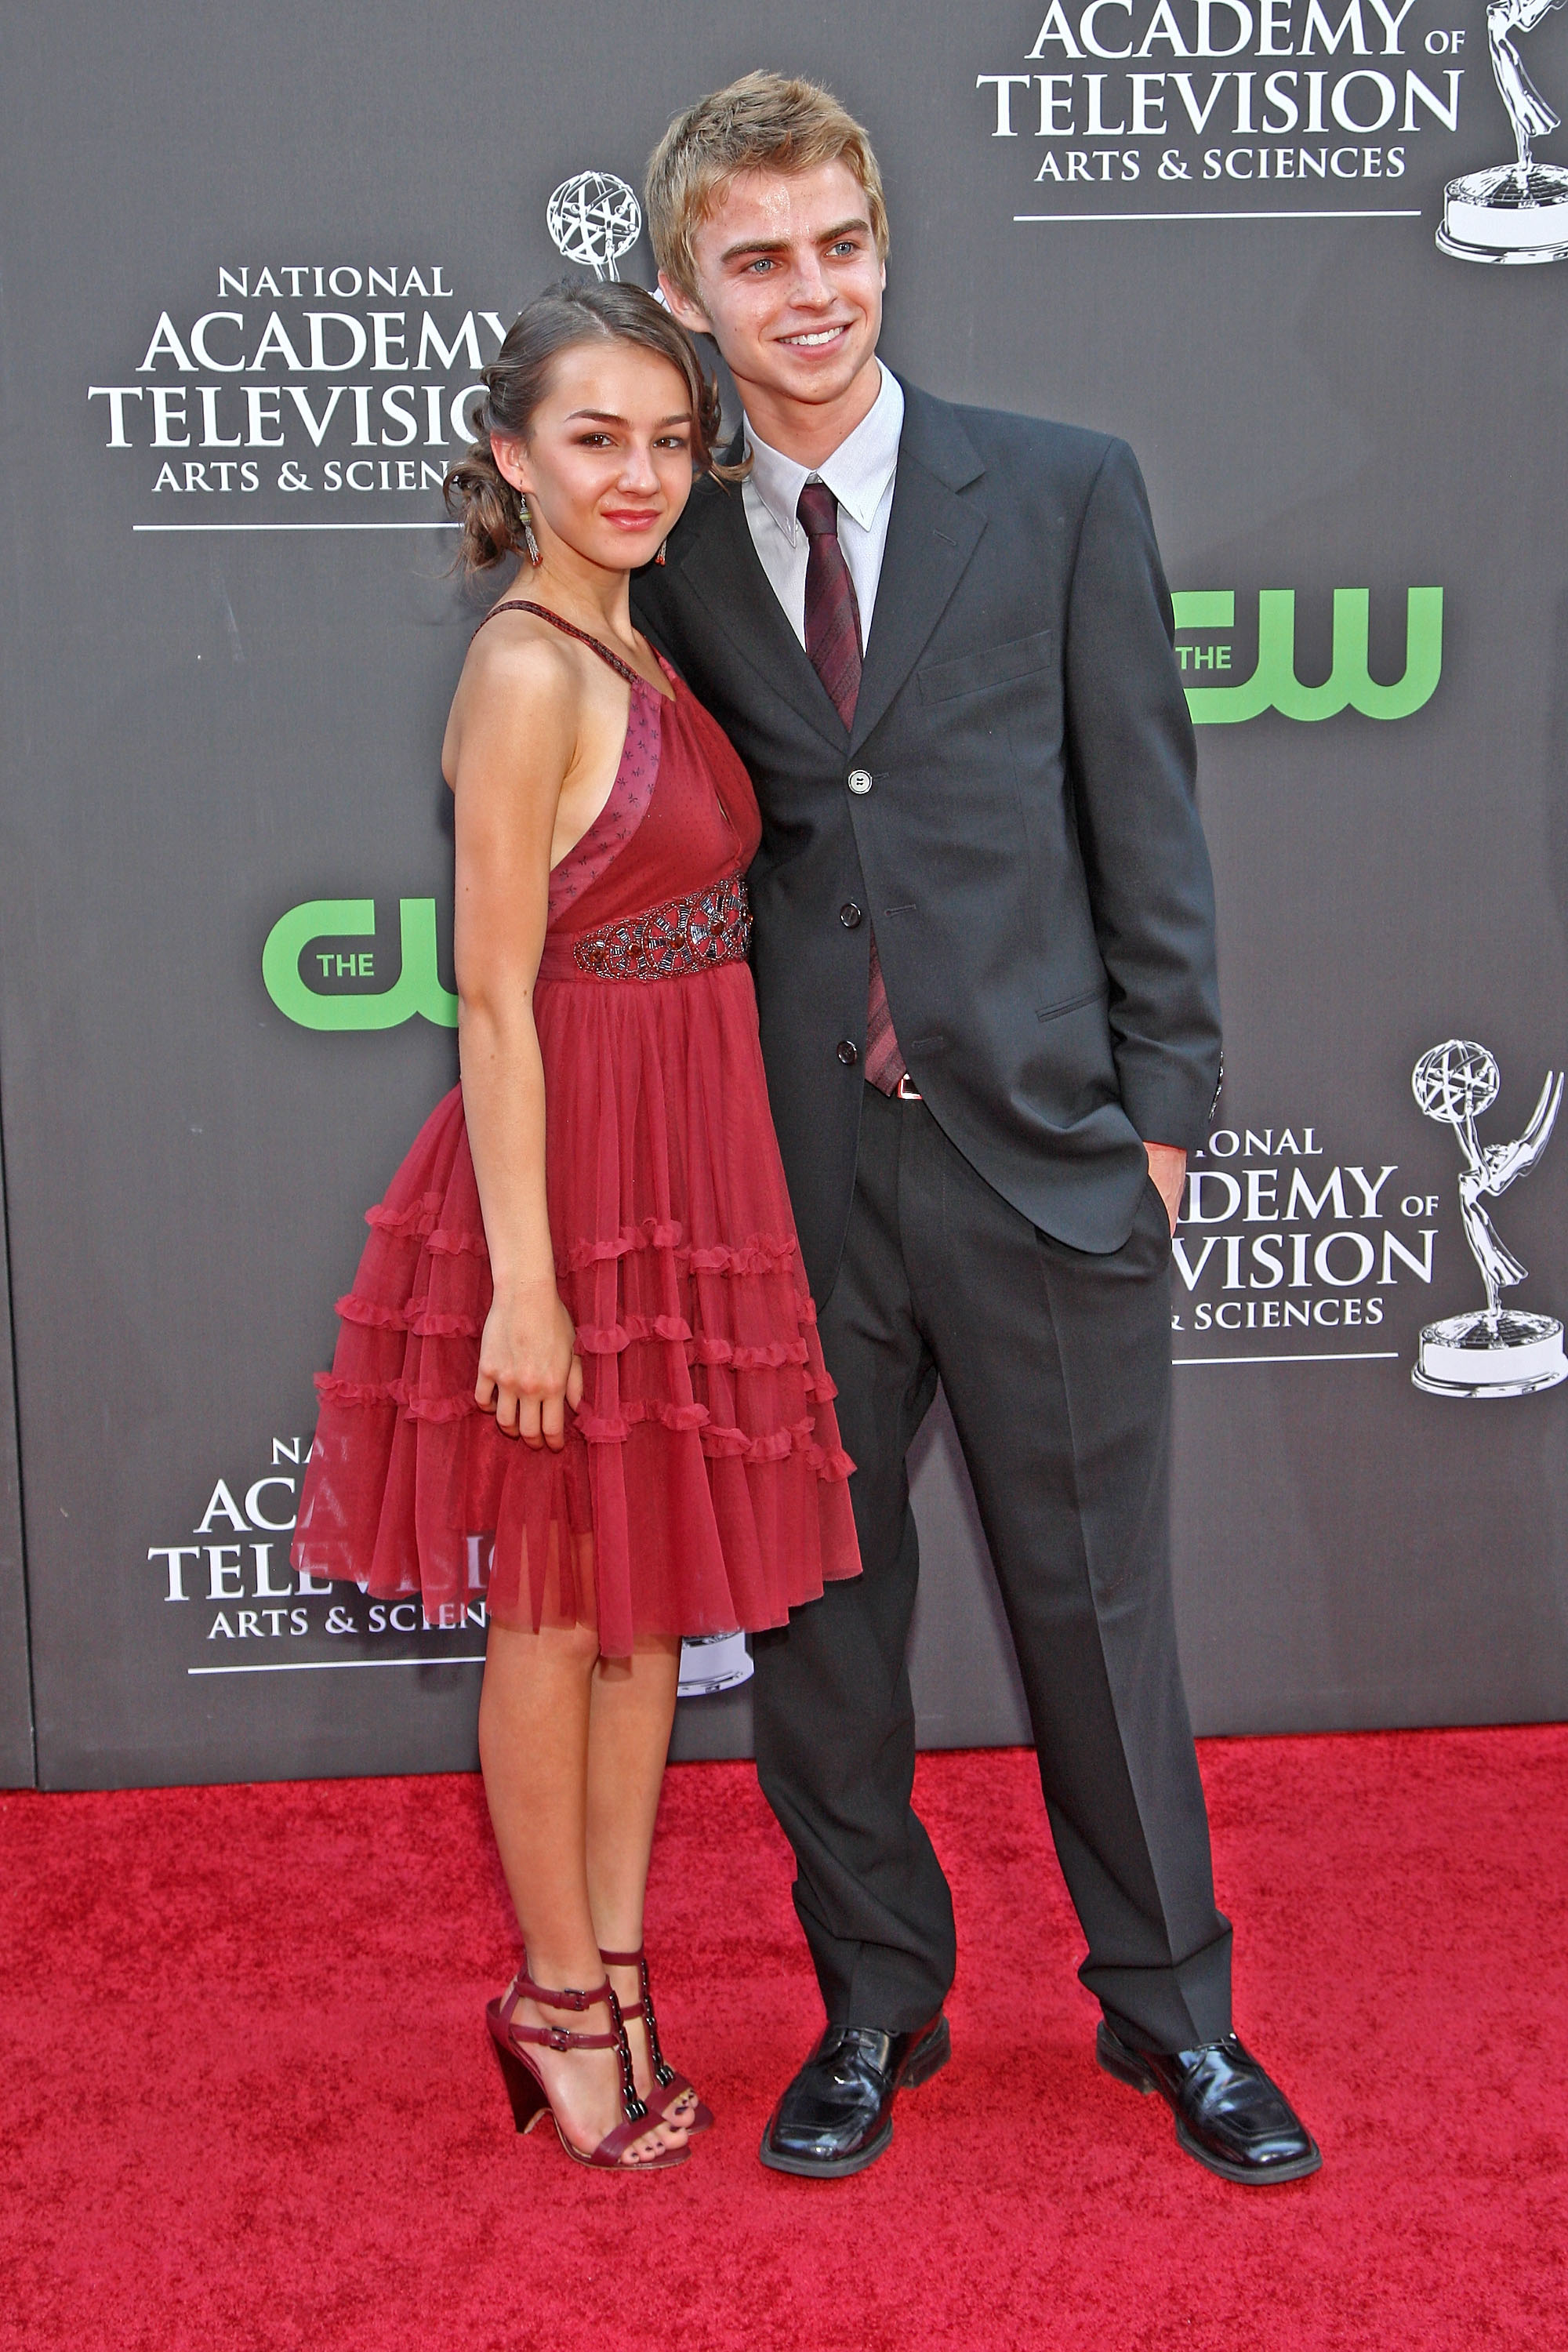 Lexi with GH costar Drew Garrett @ '09 Daytime Emmy Awards